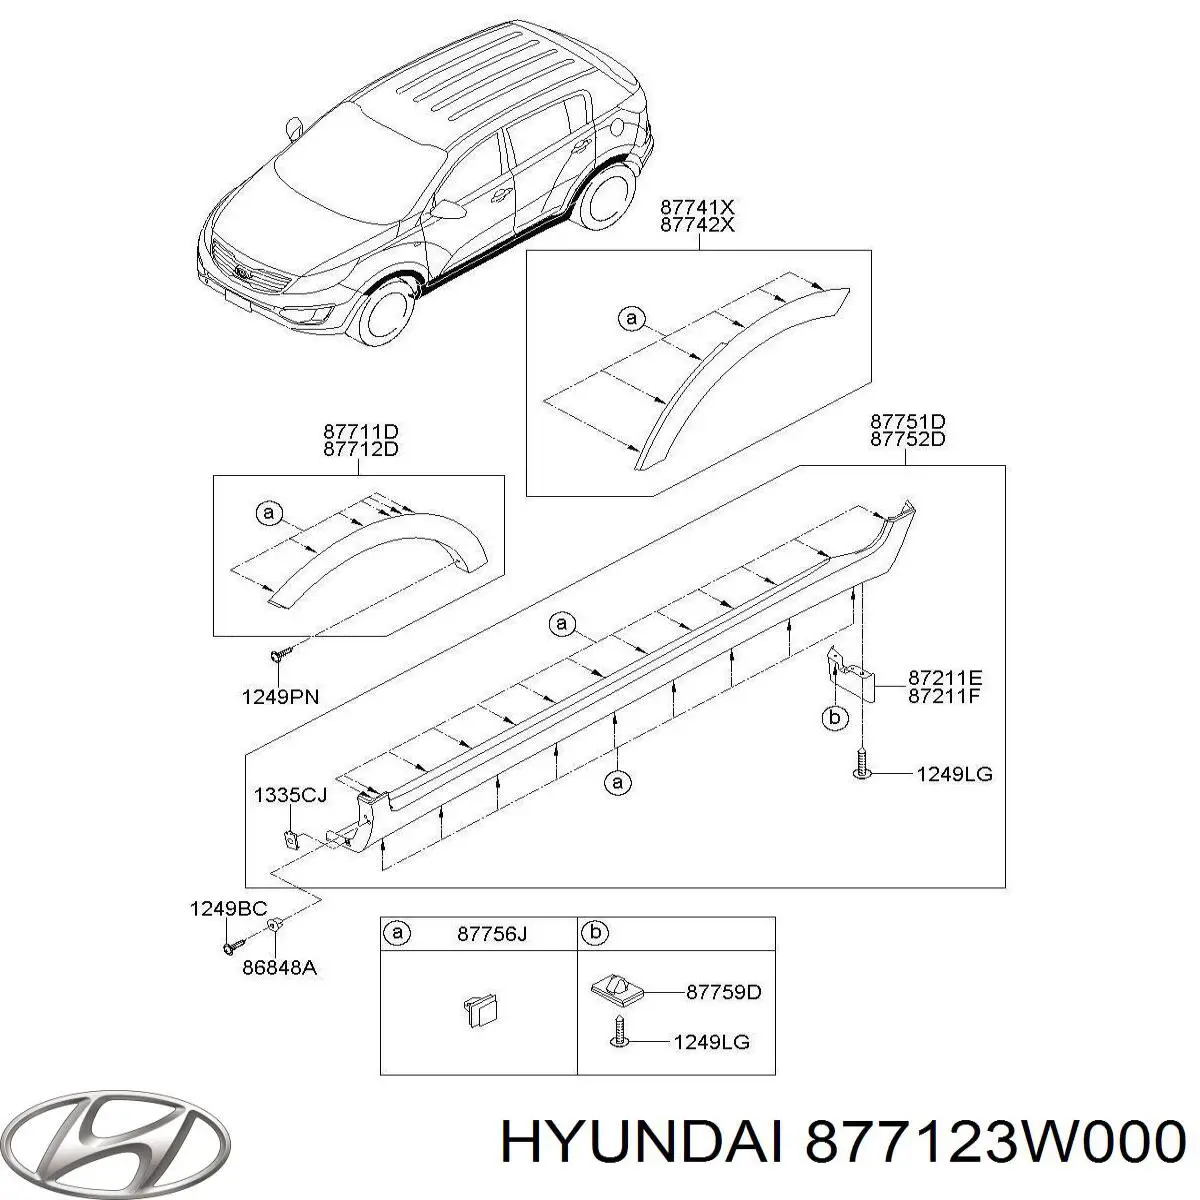 877123W000 Hyundai/Kia ensanchamiento, guardabarros delantero derecho